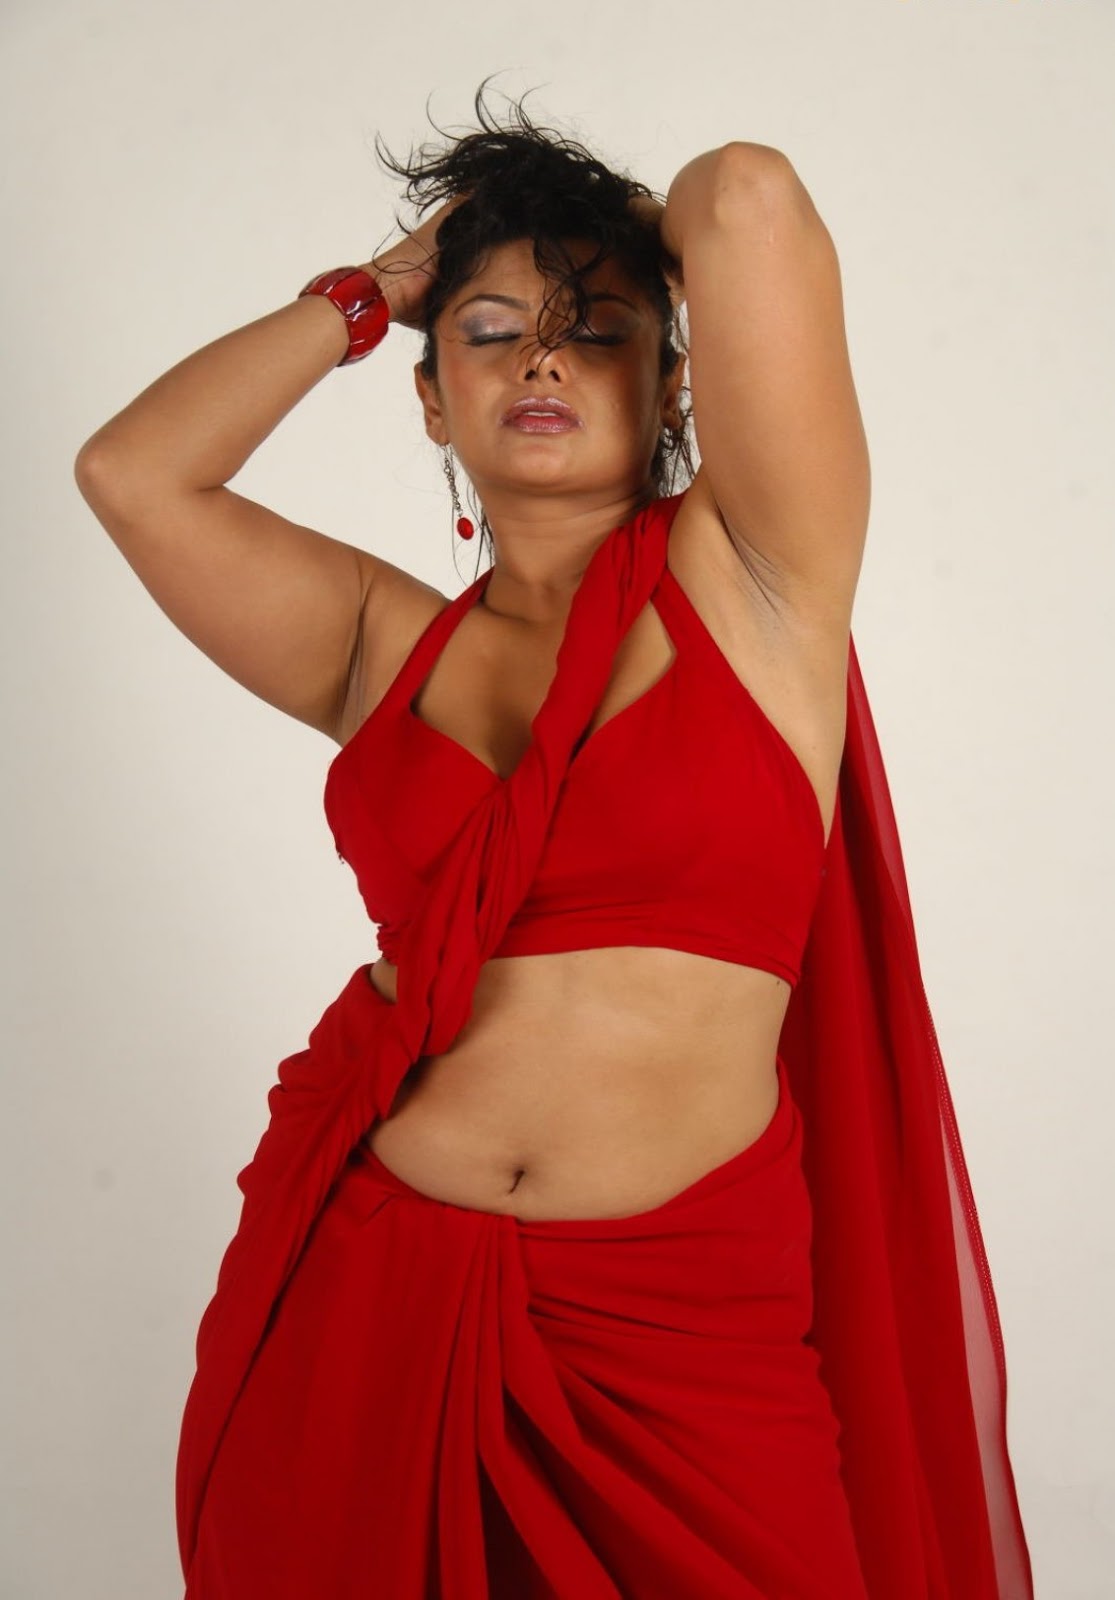 Swati Very So Hot In Red Saree With Sexy Expression Baobua Bolly Baobua